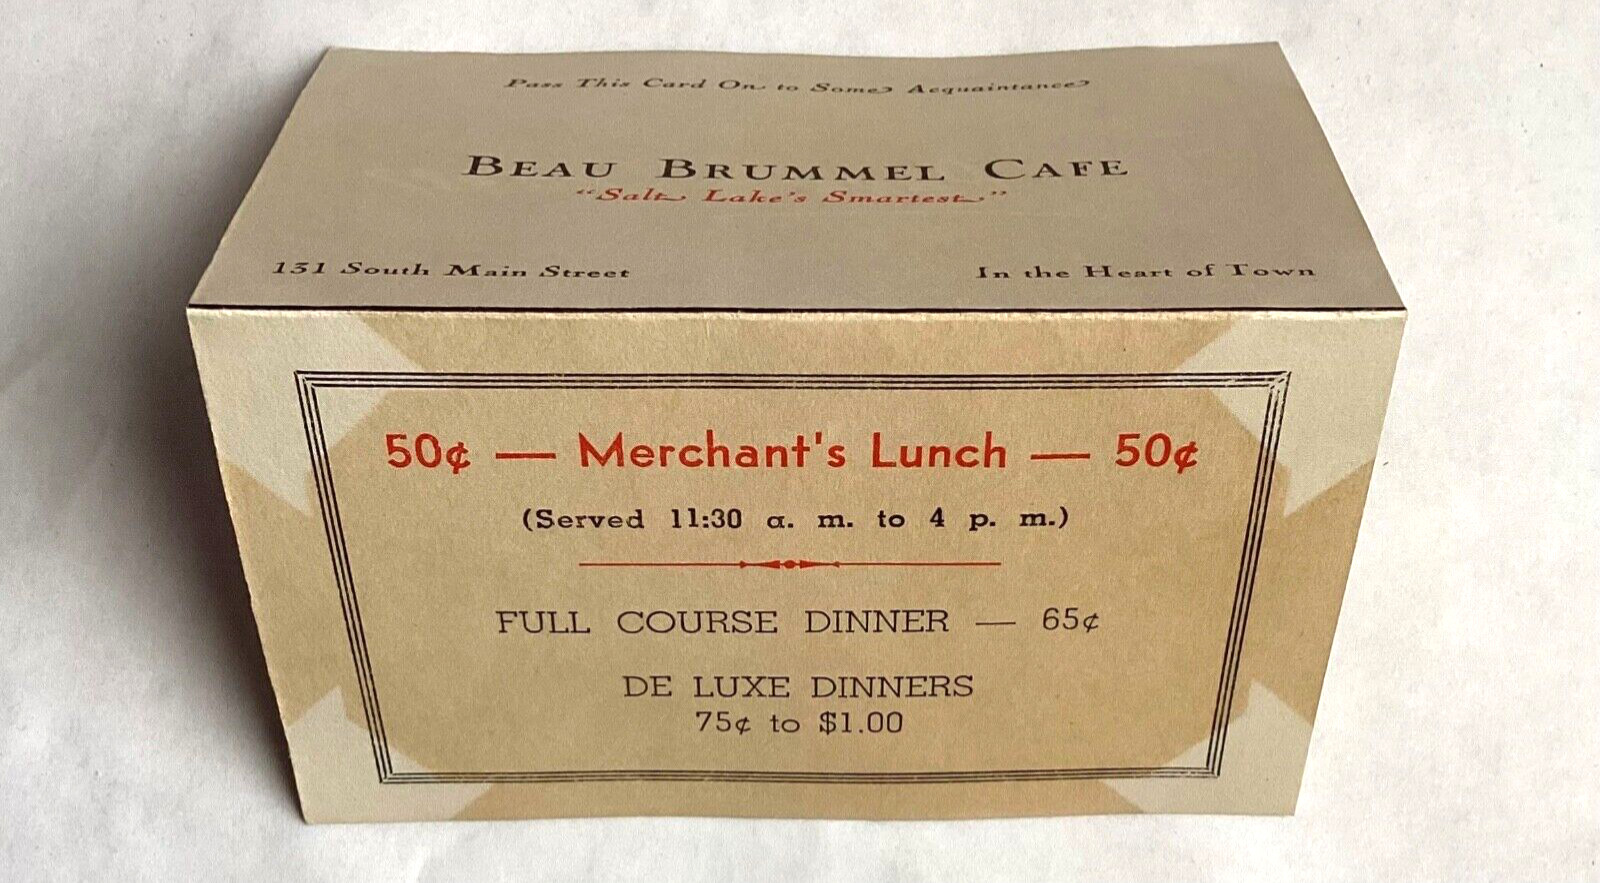 1940 SALT LAKE CITY, UTAH- BEAU BRUMMEL CAFÉ, 151 S. MAIN, TABLE/BUSINESS CARD